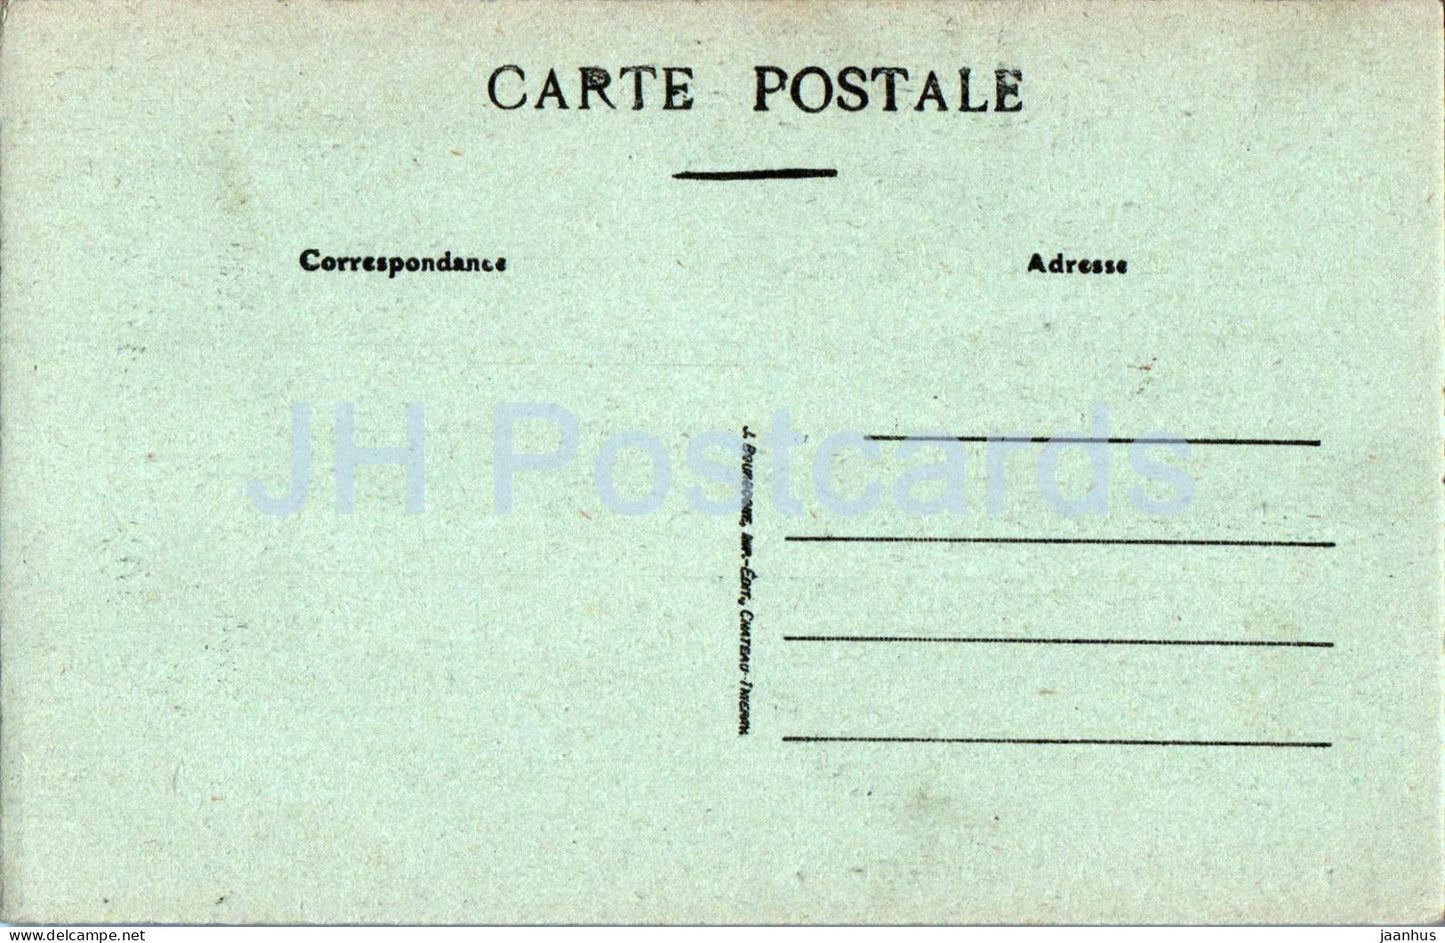 Sezanne - Interieur de l'Hospice - Le Cloitre - 7 - alte Postkarte - Frankreich - unbenutzt 